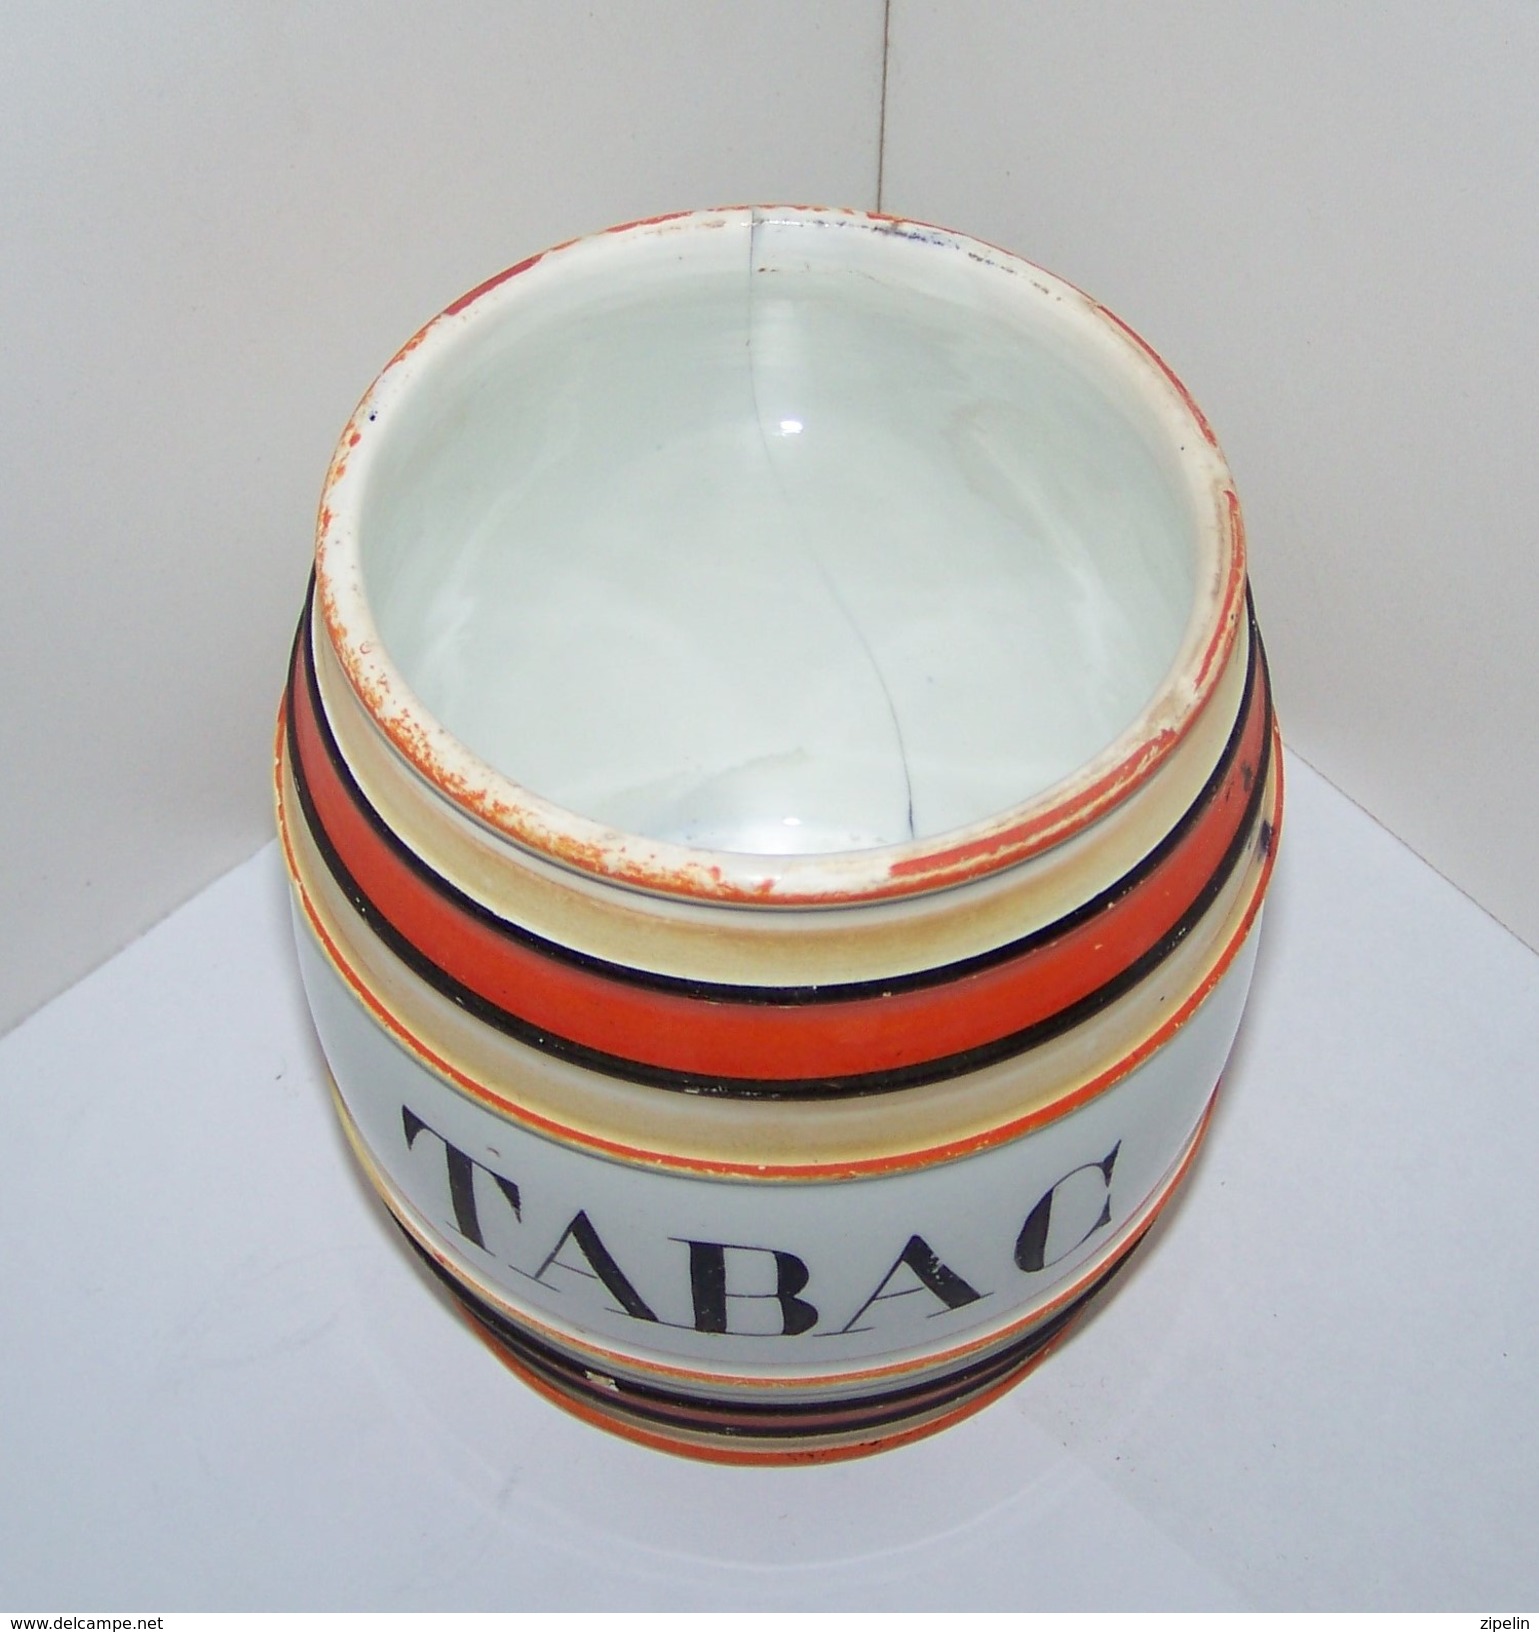 3 Ancien Boite ou Pot, pots à tabac, décor Vieux pêcheur,  gallion et  tonneau  en céramique